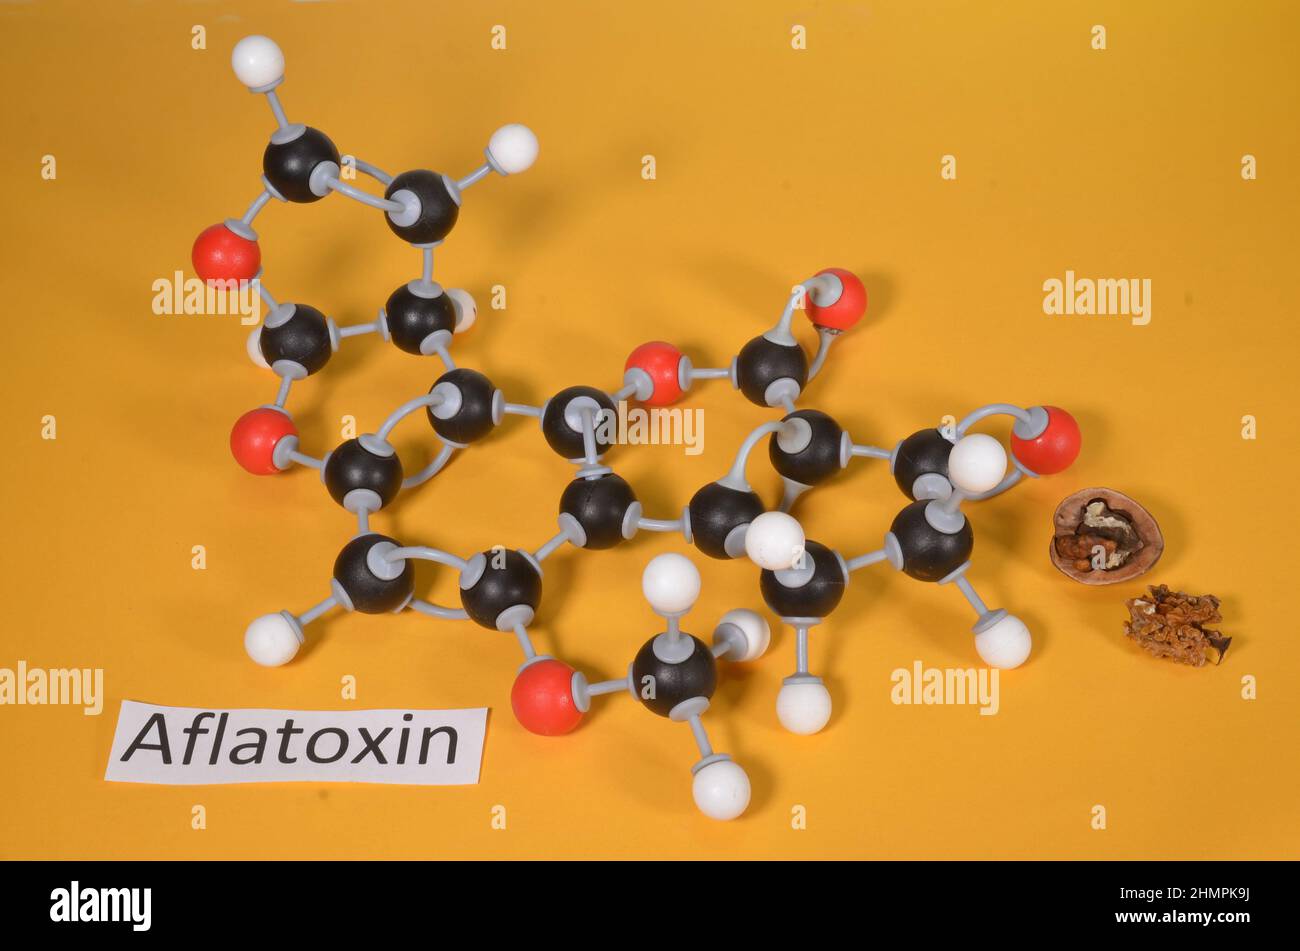 Molécula modelo og Aflatoxin B1, con muestra de hongo atacó nueces. El rojo es oxígeno, el negro es carón e hidrógeno blanco. Foto de stock